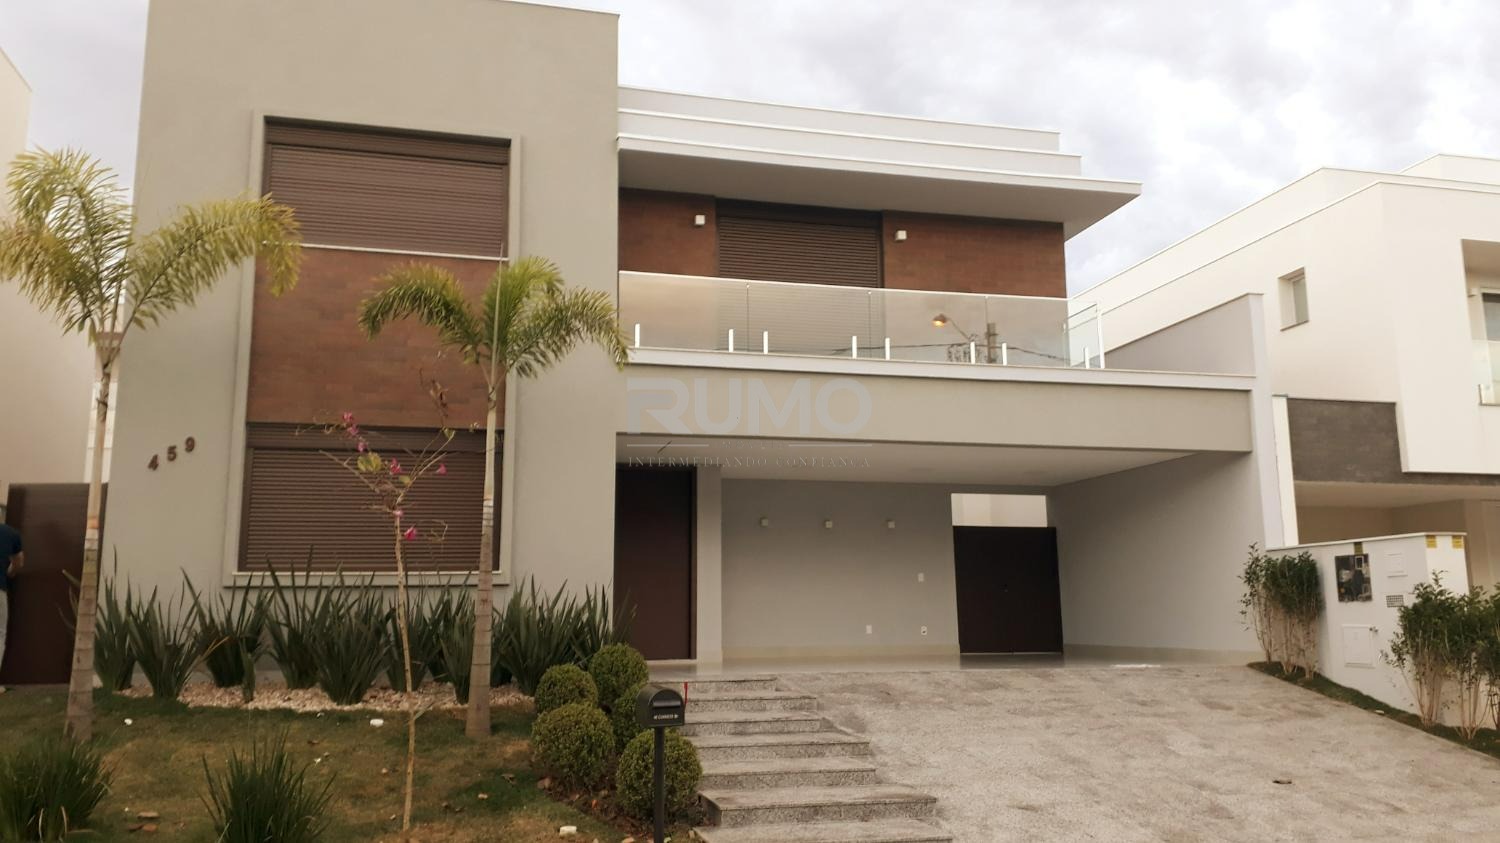 CA017935 | Casa venda Loteamento Parque dos Alecrins | Campinas/SP